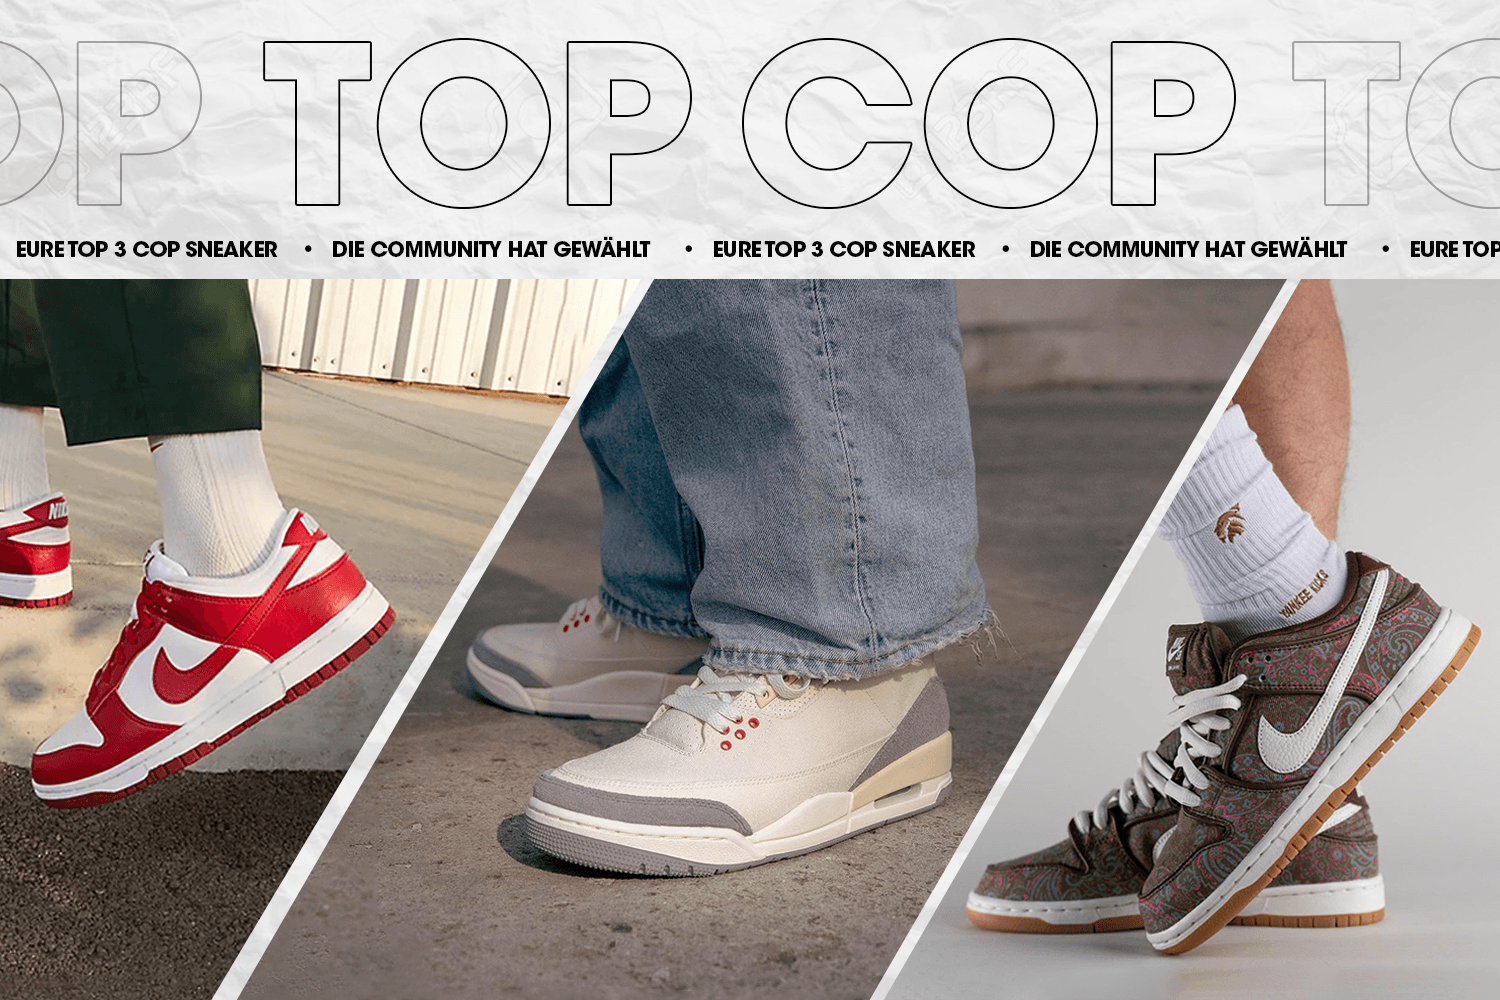 Die Community hat gewählt: Eure Top 3 Cop Sneaker Woche 13